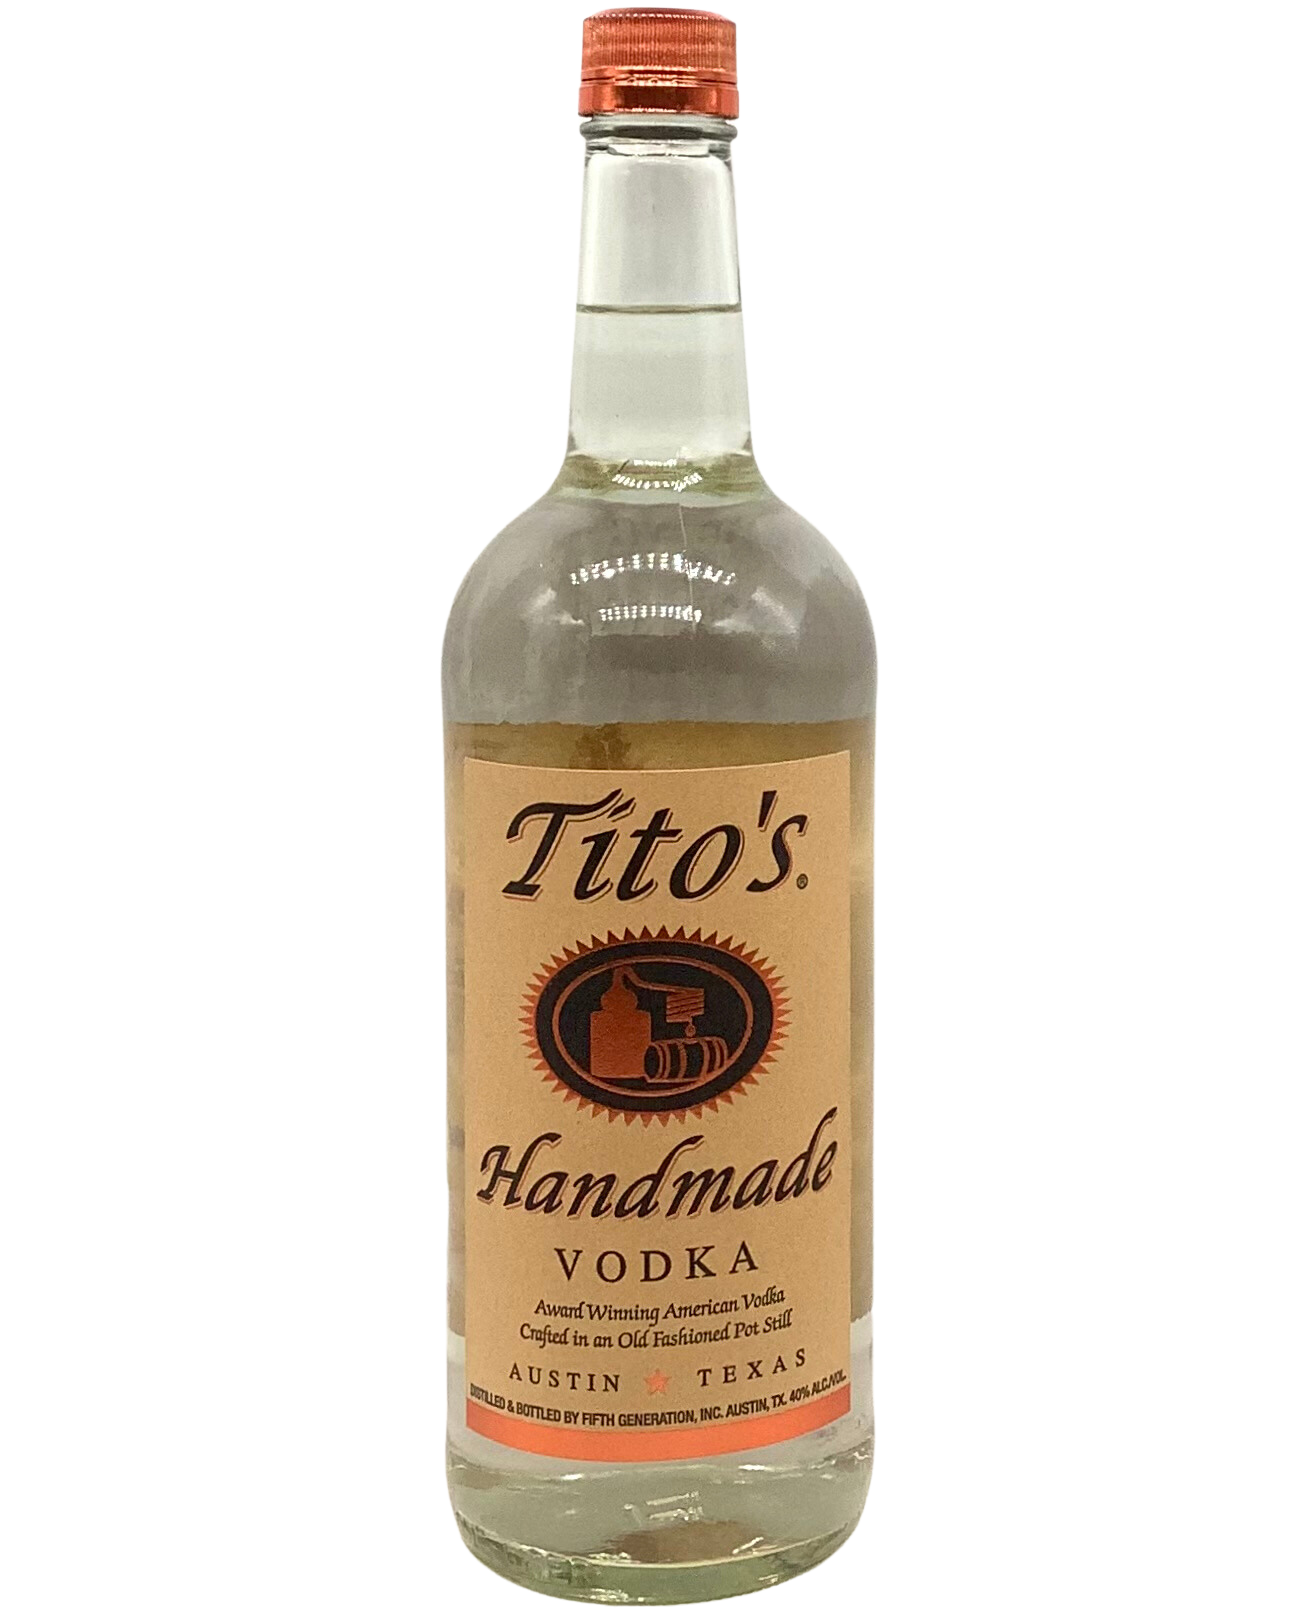 Tito's Handmade Vodka, Austin, Texas 1L